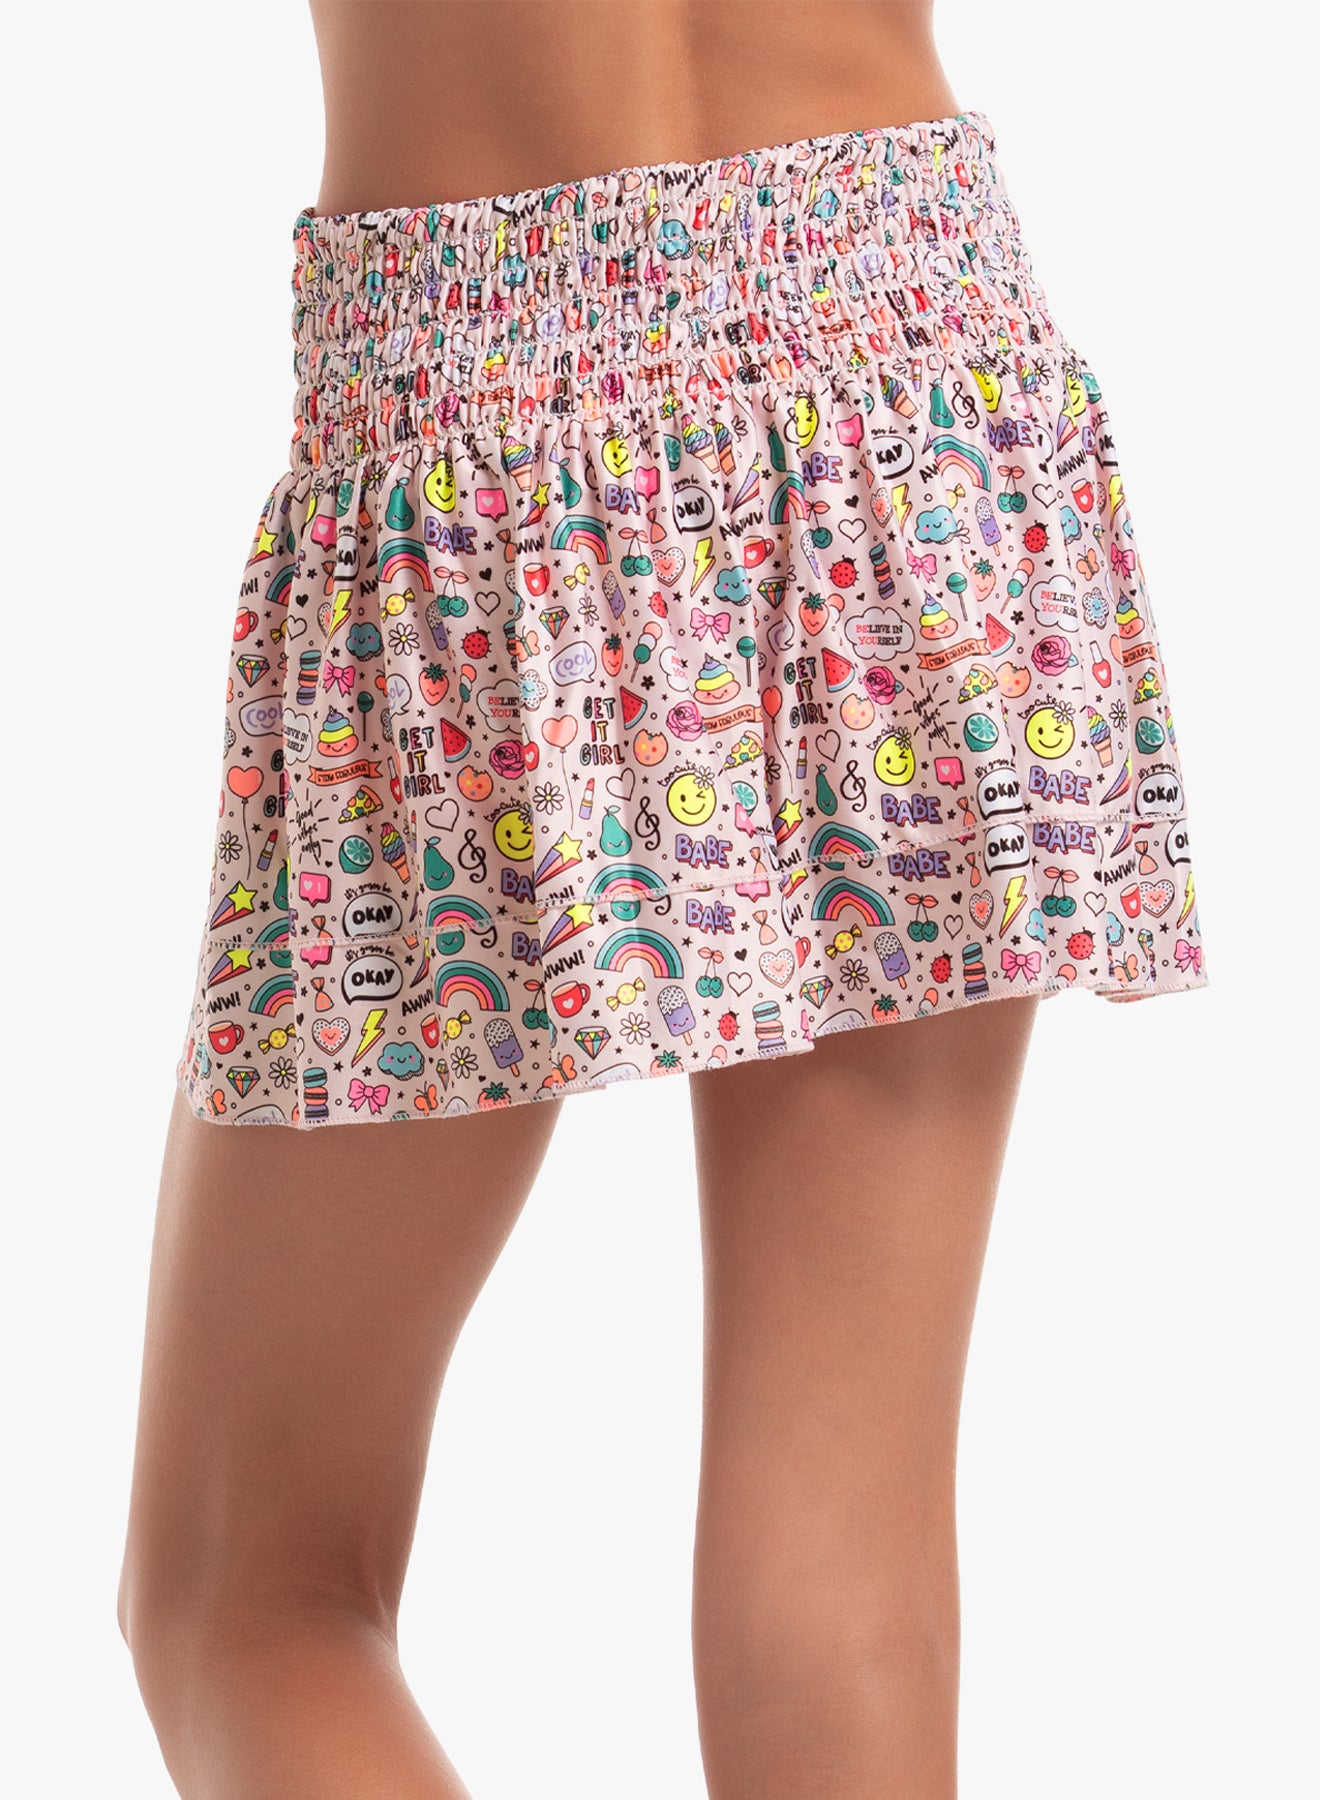 Get It Girl Smocked Skirt (Girls)